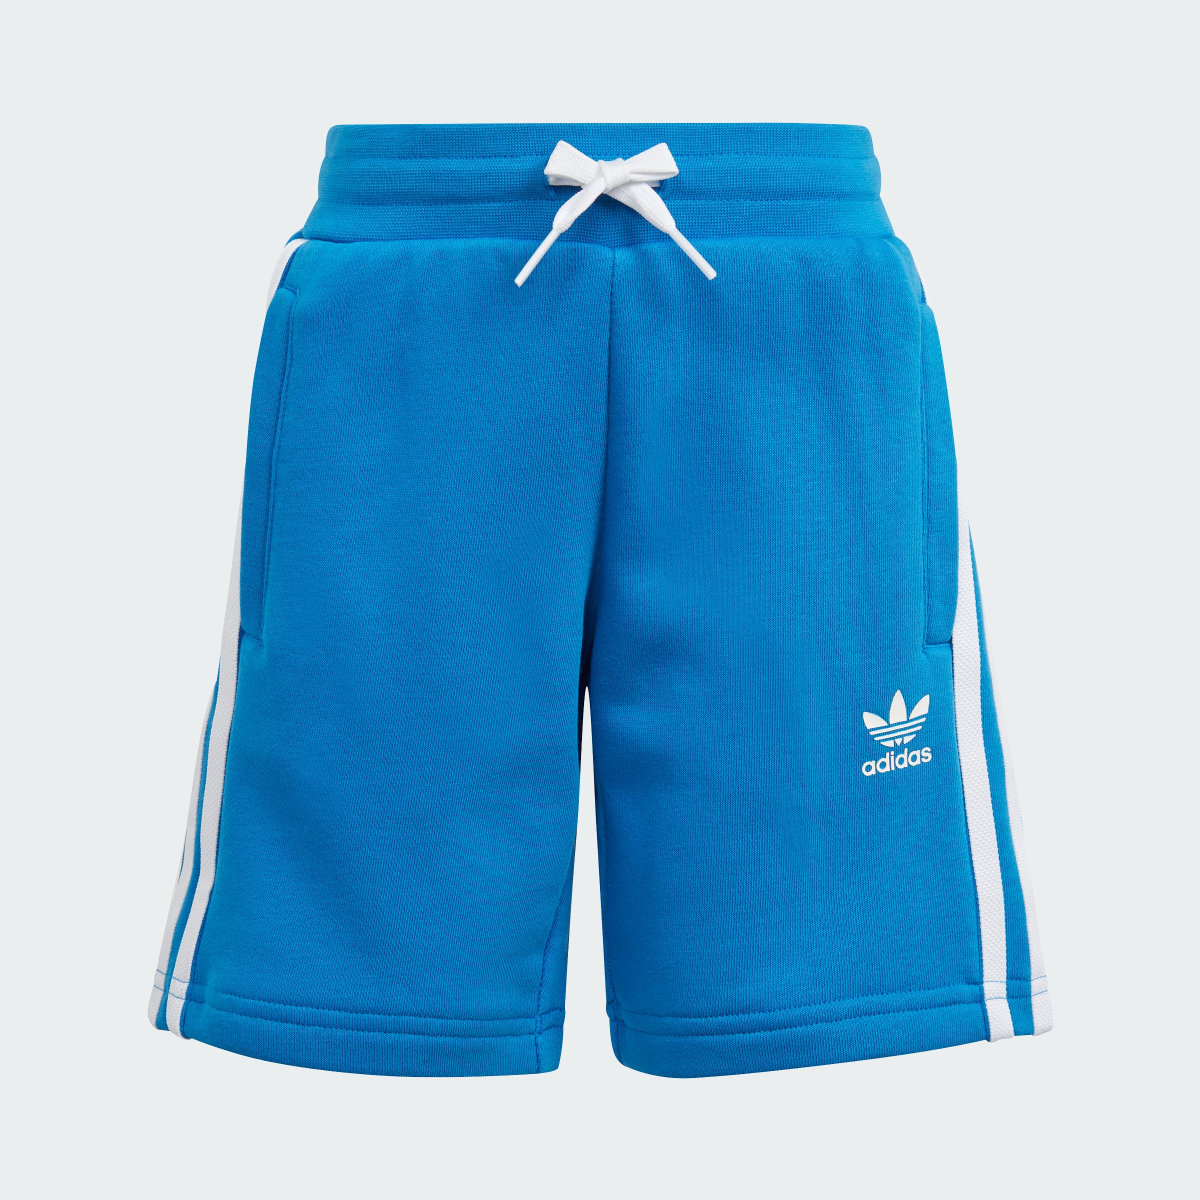 Adidas Adicolor Shorts and Tee Set. 5